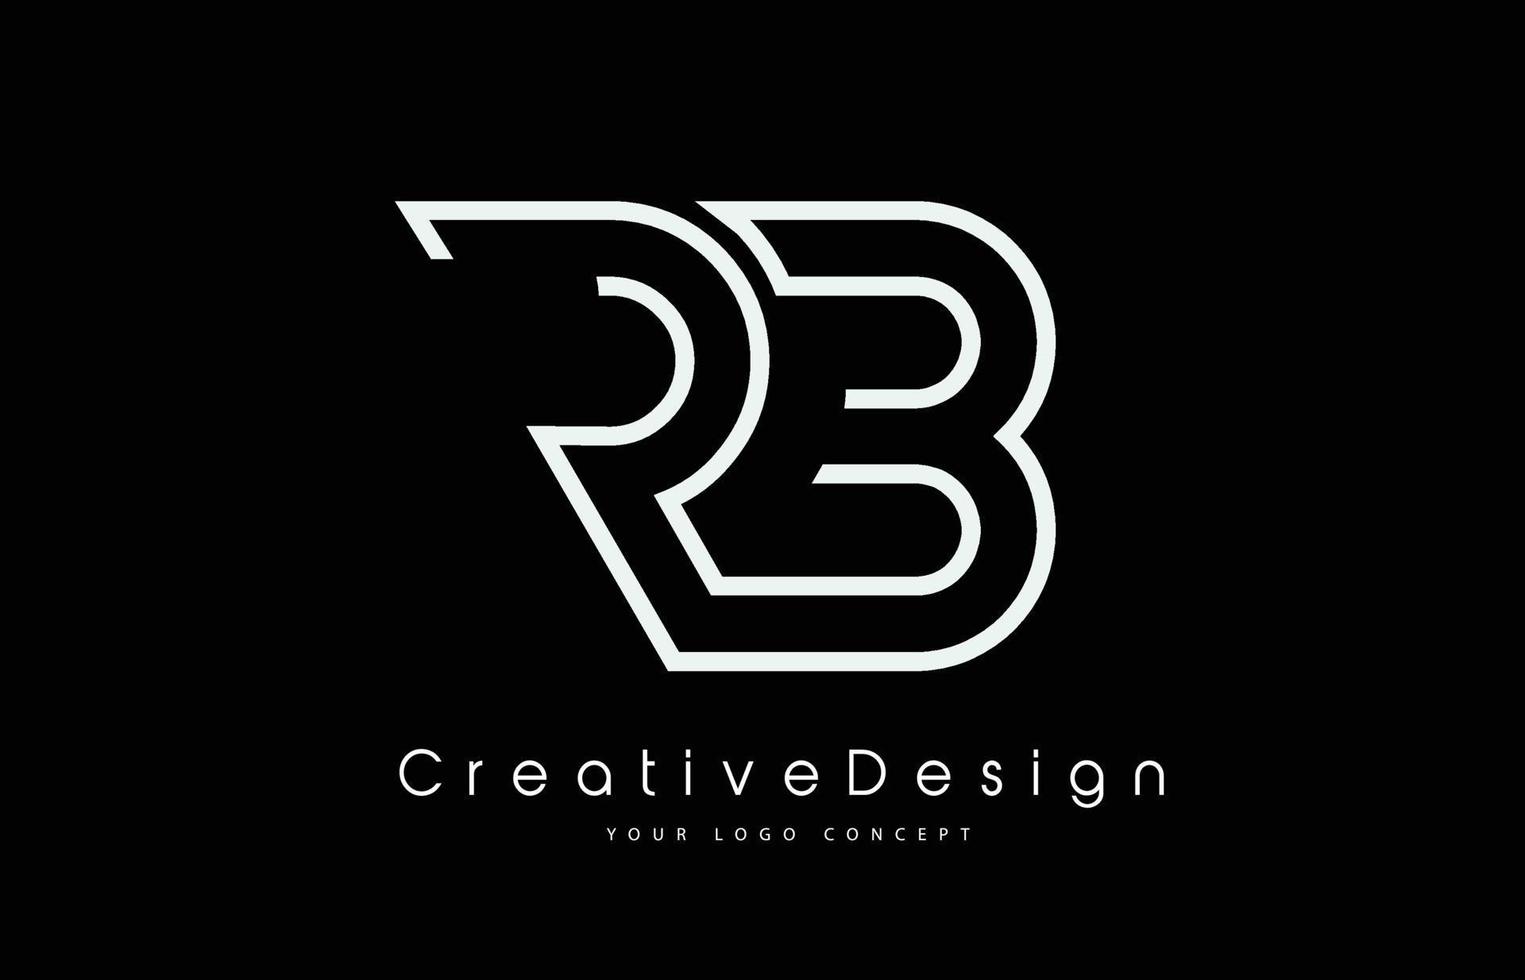 création de logo de lettre rb rb en couleurs blanches. vecteur